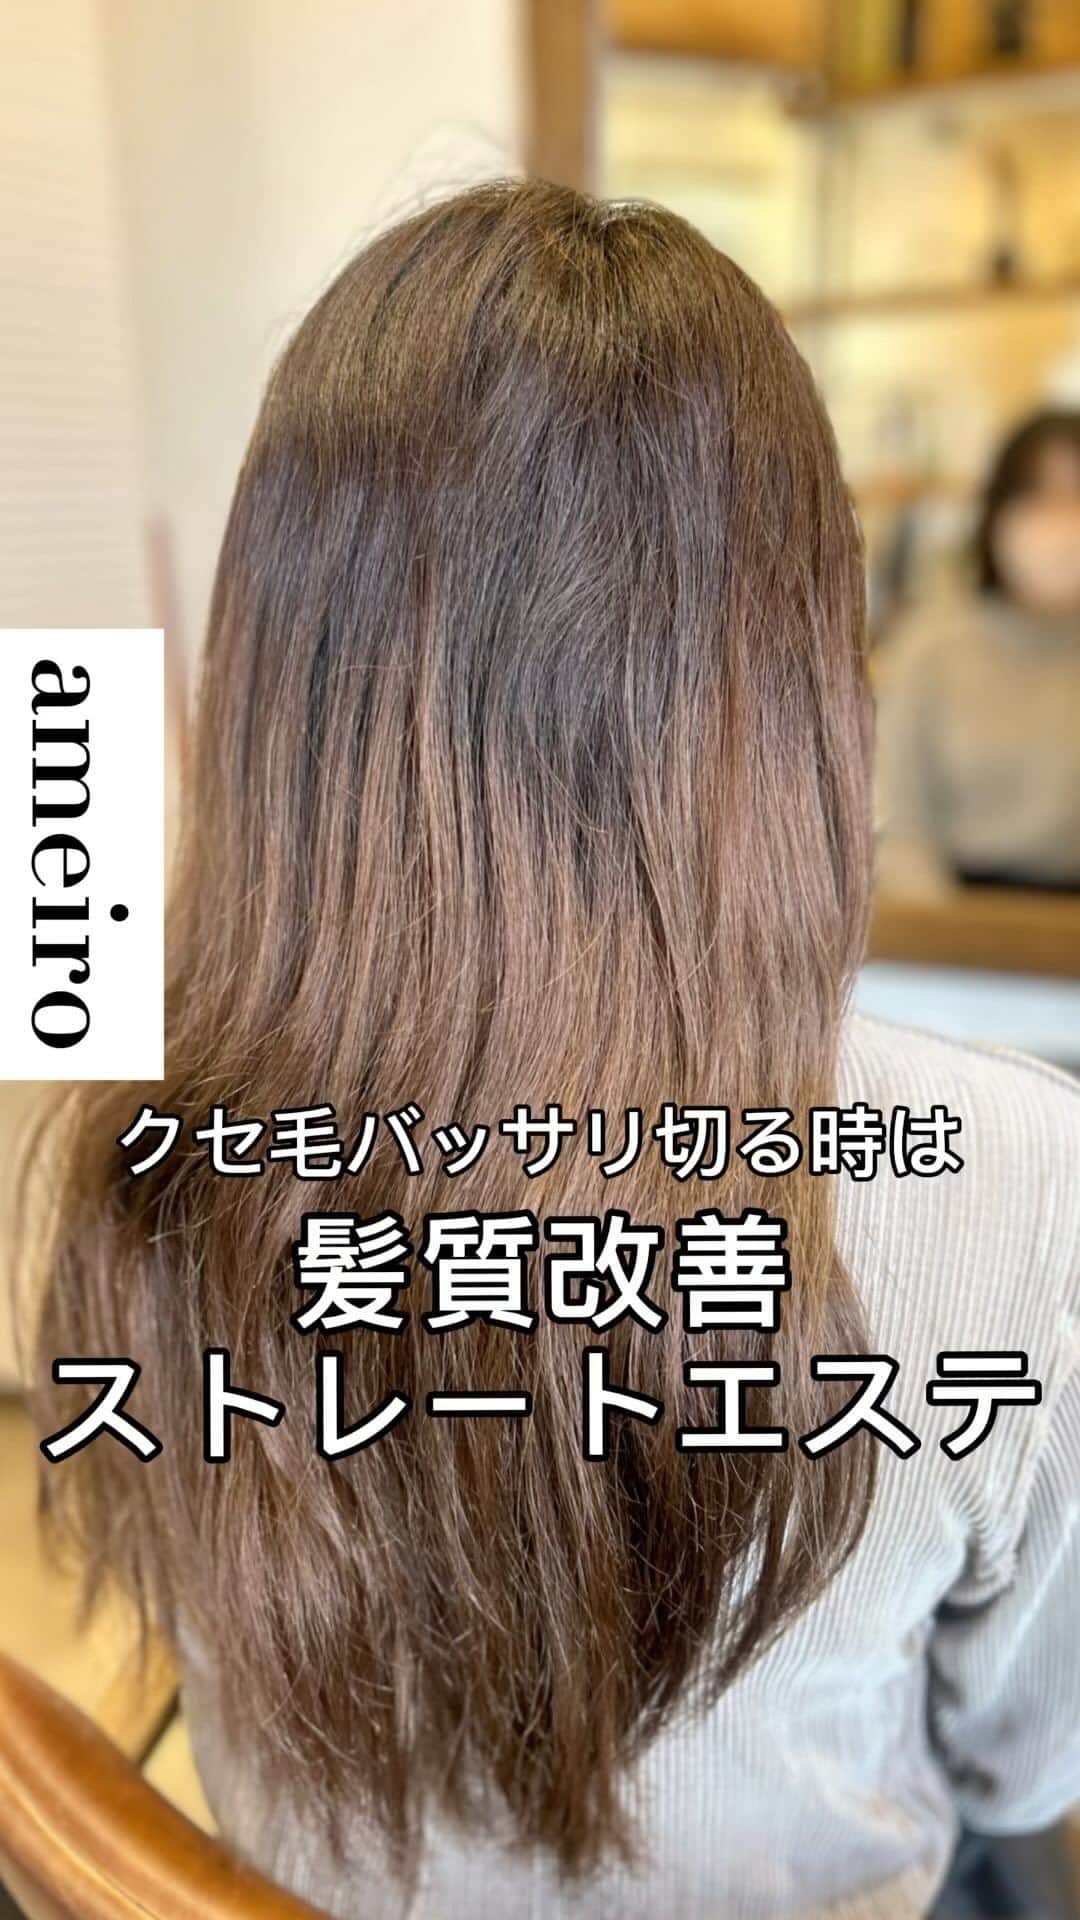 金村慎太郎〈hair+cafe〉のインスタグラム